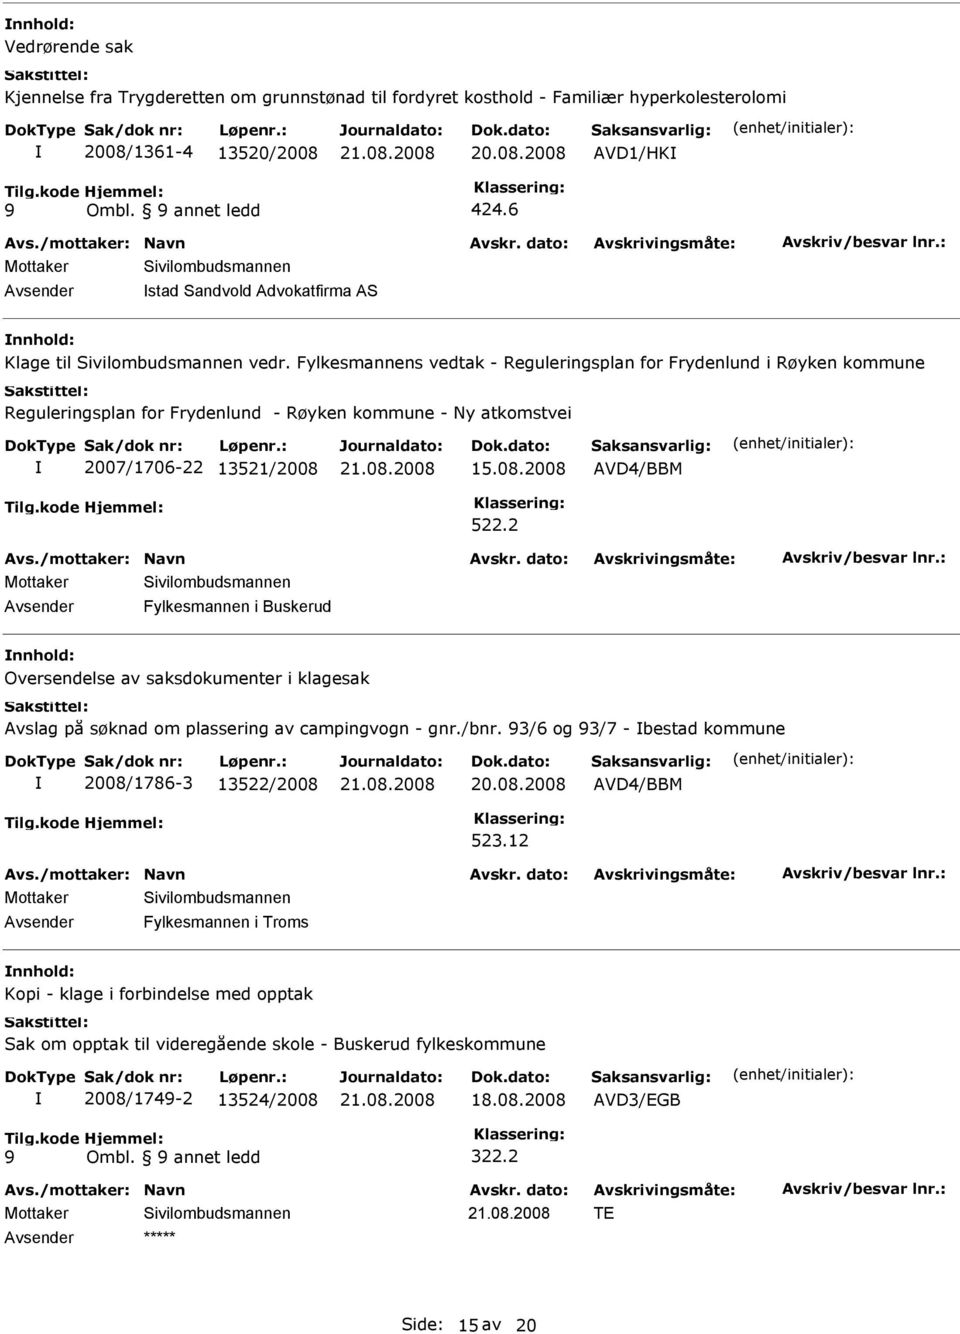 Fylkesmannens vedtak - Reguleringsplan for Frydenlund i Røyken kommune Reguleringsplan for Frydenlund - Røyken kommune - Ny atkomstvei 2007/1706-22 13521/2008 15.08.2008 AVD4/BBM 522.